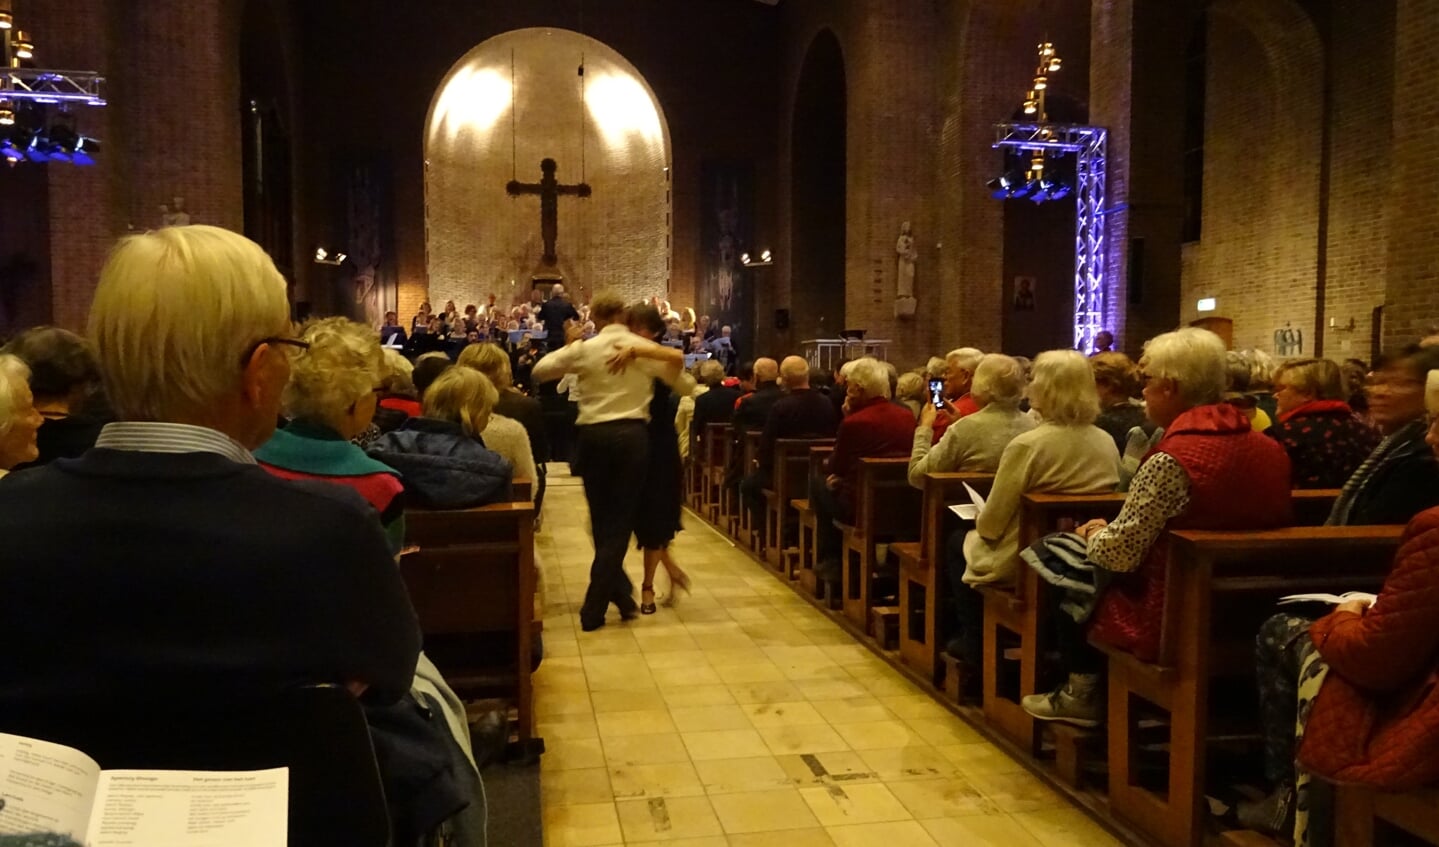 Als verrassing dansten tijdens de instrumentale uitvoering van de Libertango twee tango dansparen door de kerk.